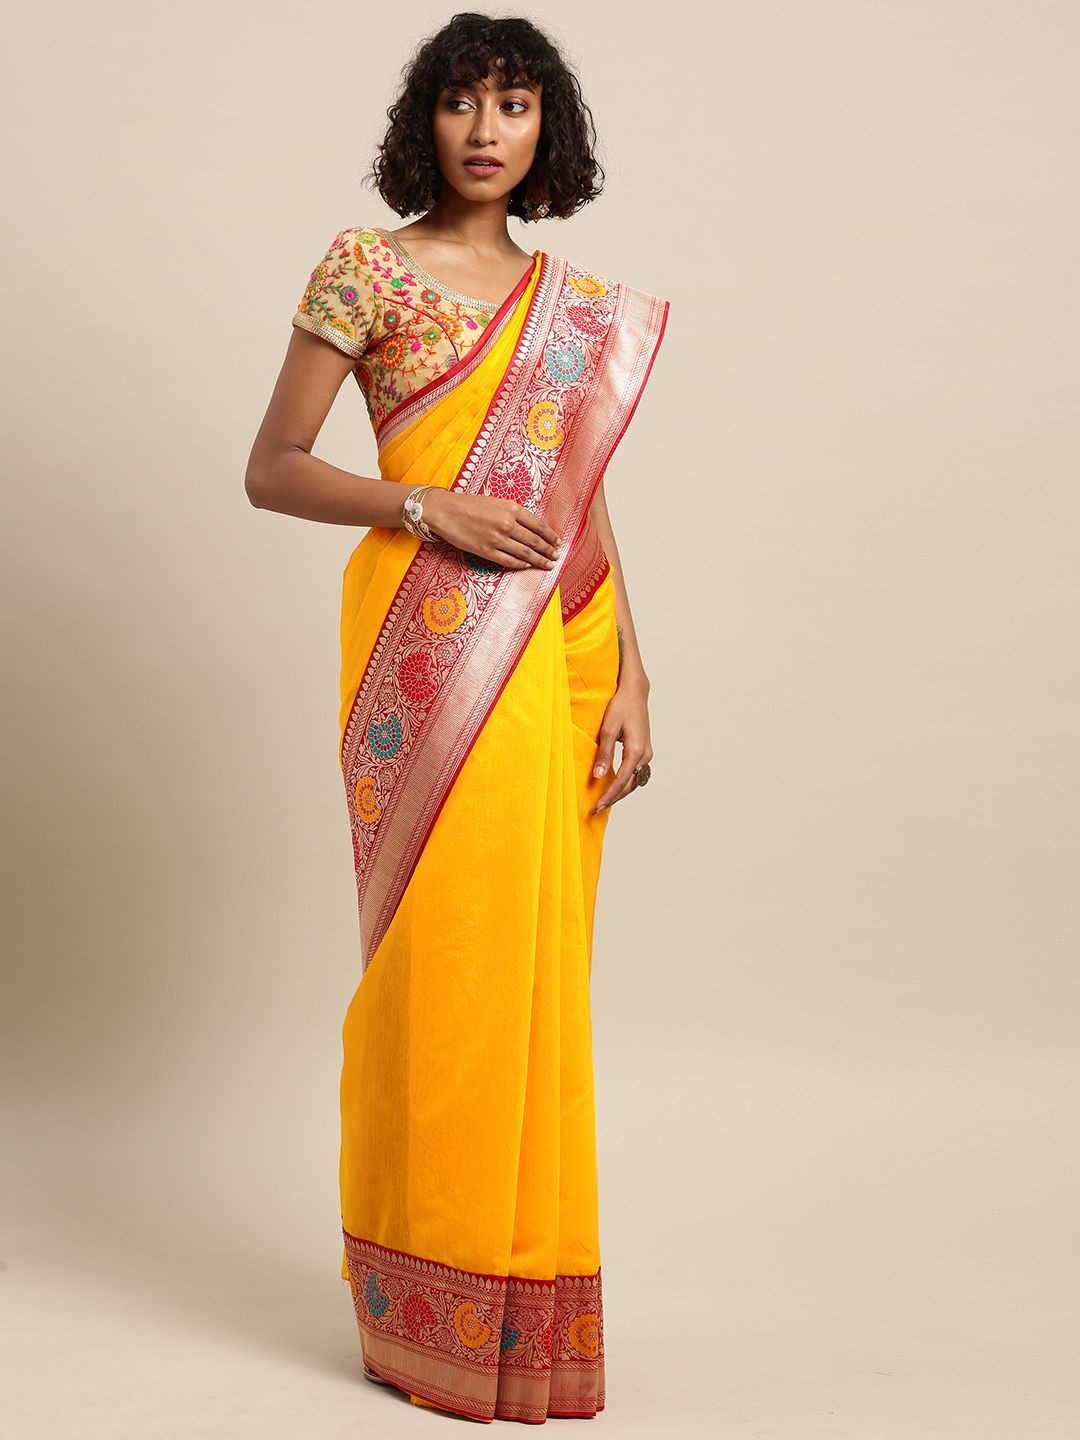 Varkala Silk Sarees Mustard Yellow & Red Cotton Blend Solid Banarasi Saree Price in India